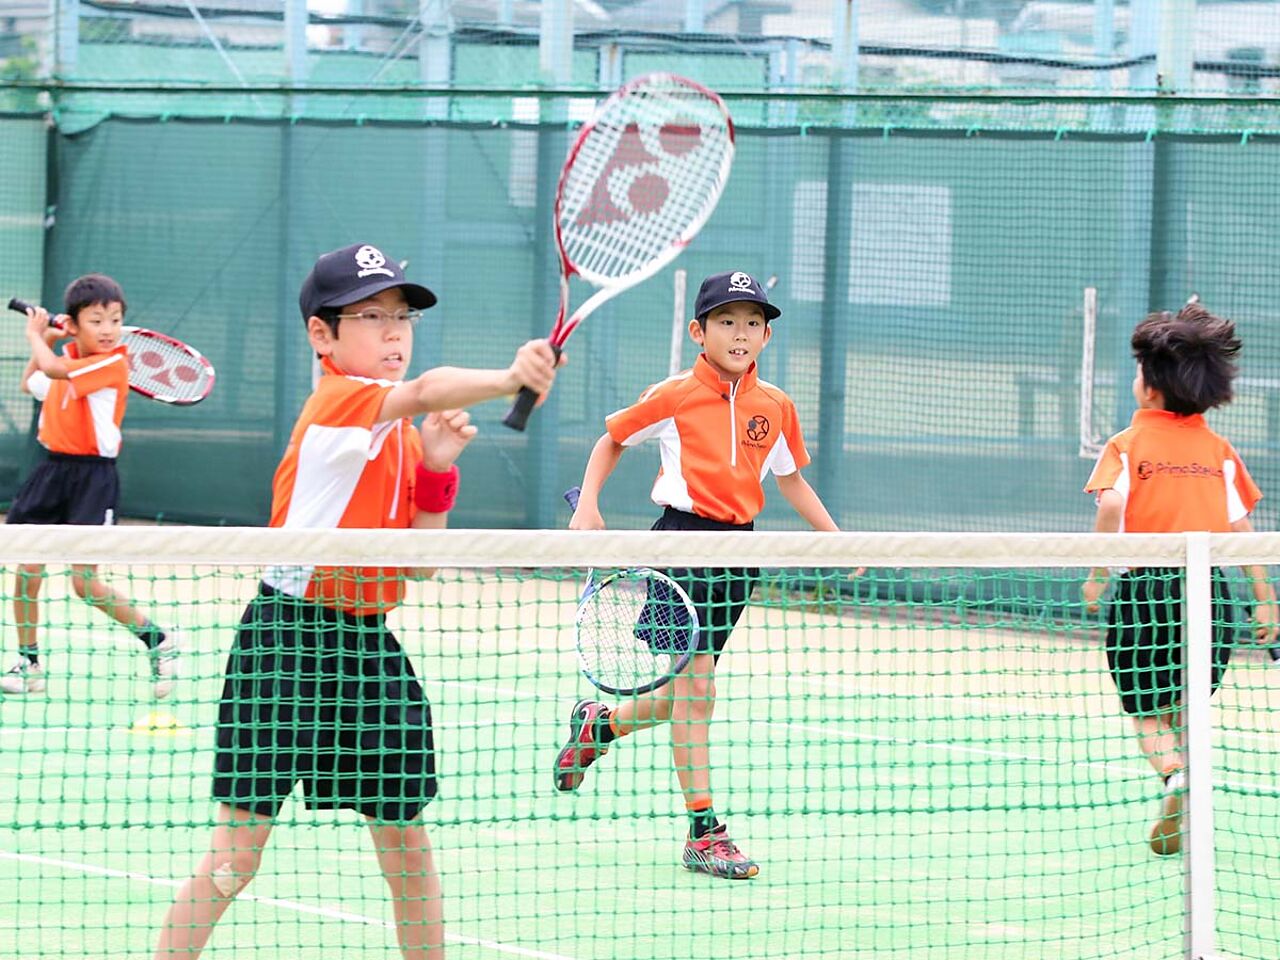 テニススクール プリマステラの子どもたちが試合を行う様子が分かる画像